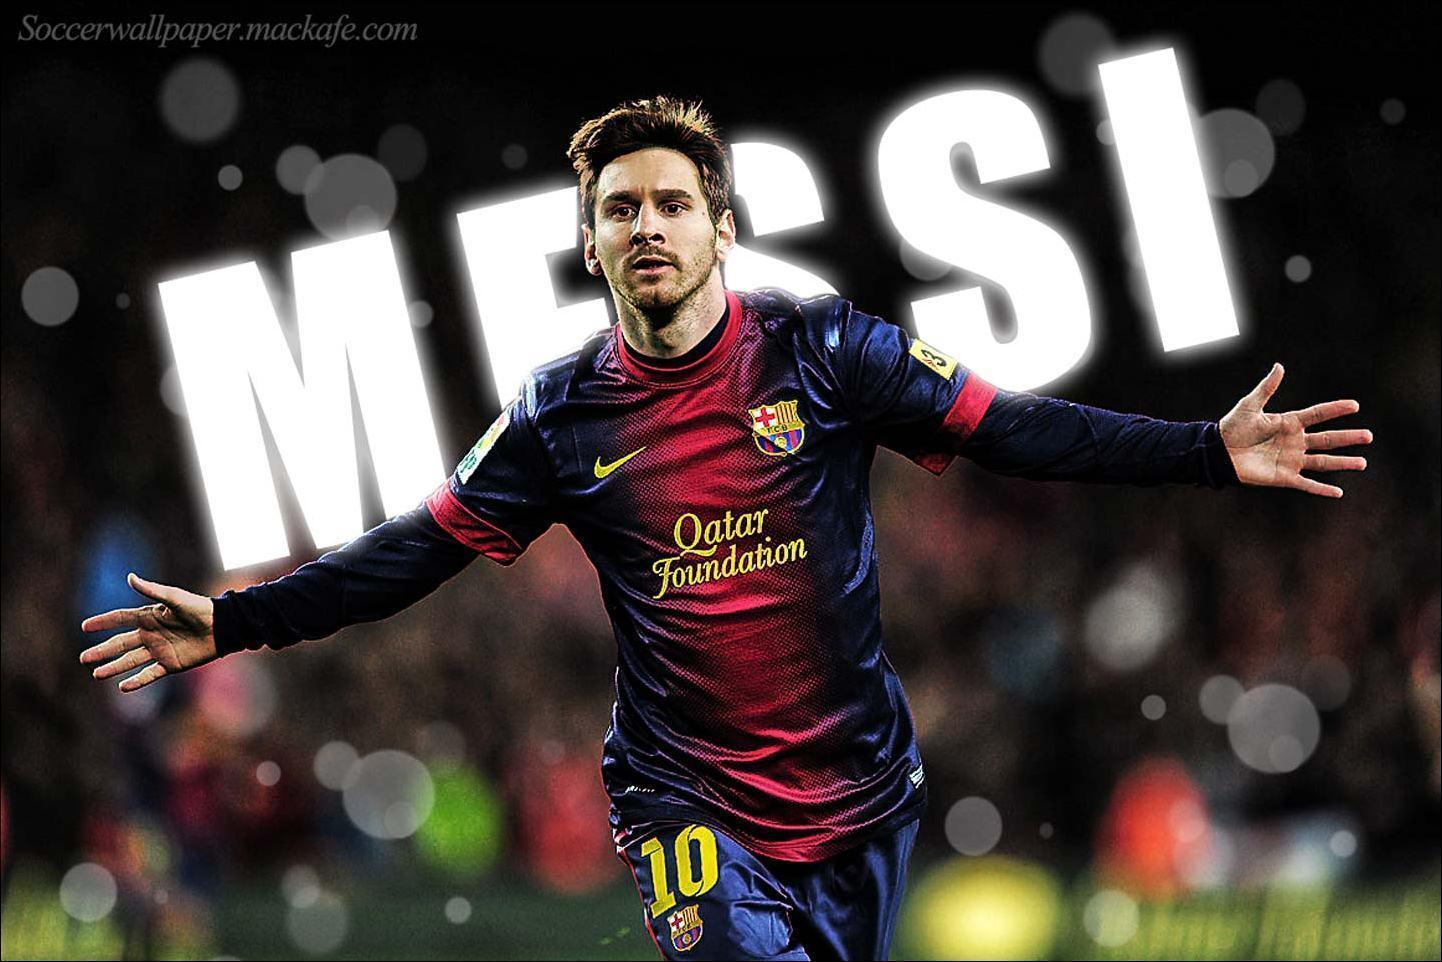 Wallpapers Messi 2014 – Selección Argentina – Barcelona